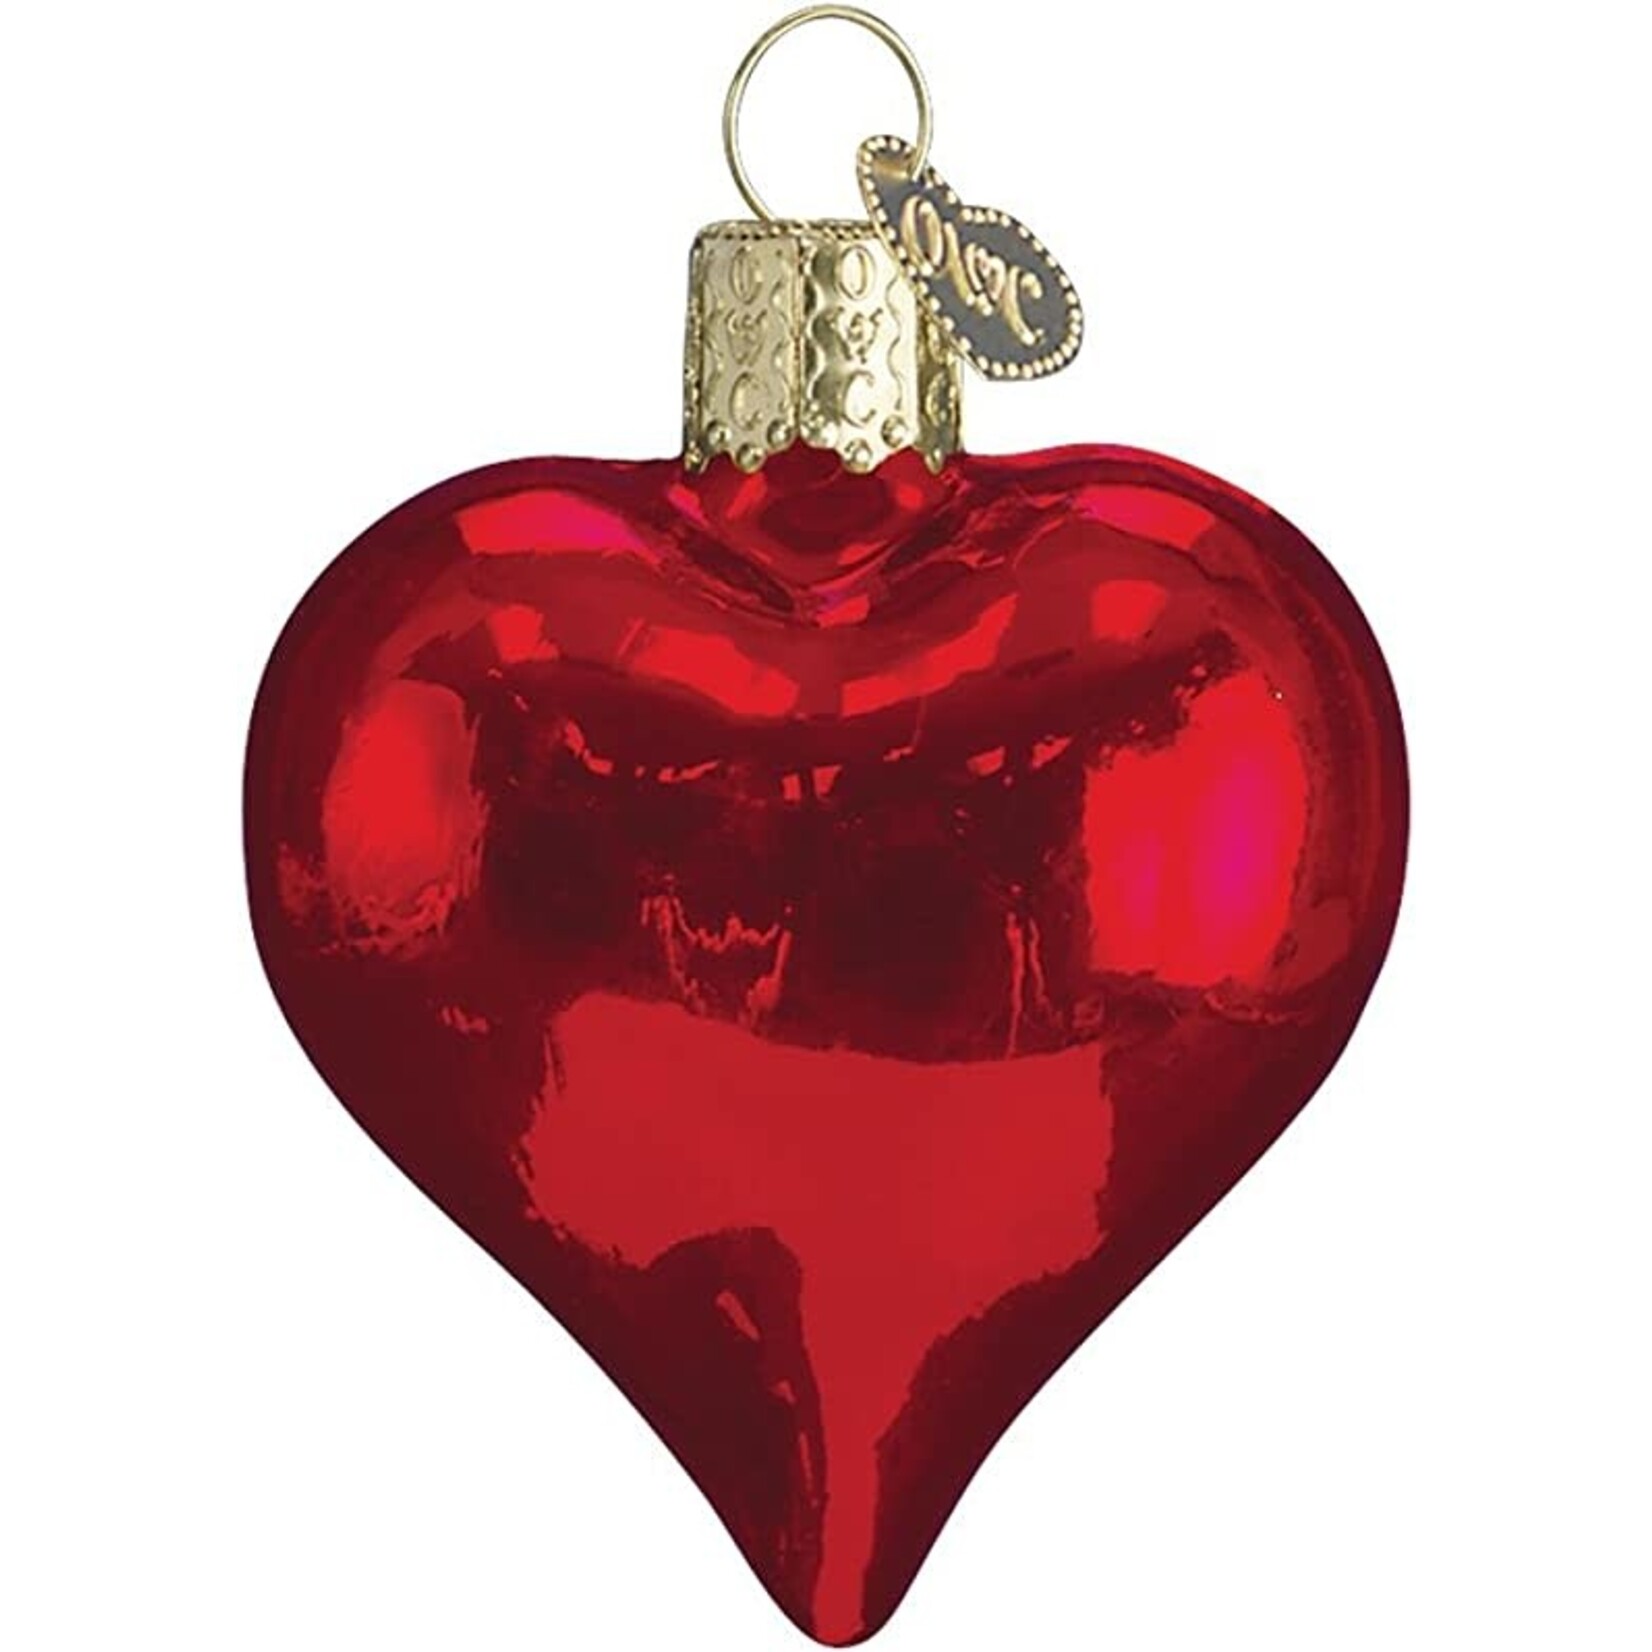 Tannenbaum Treasures Small Red Heart Ornament